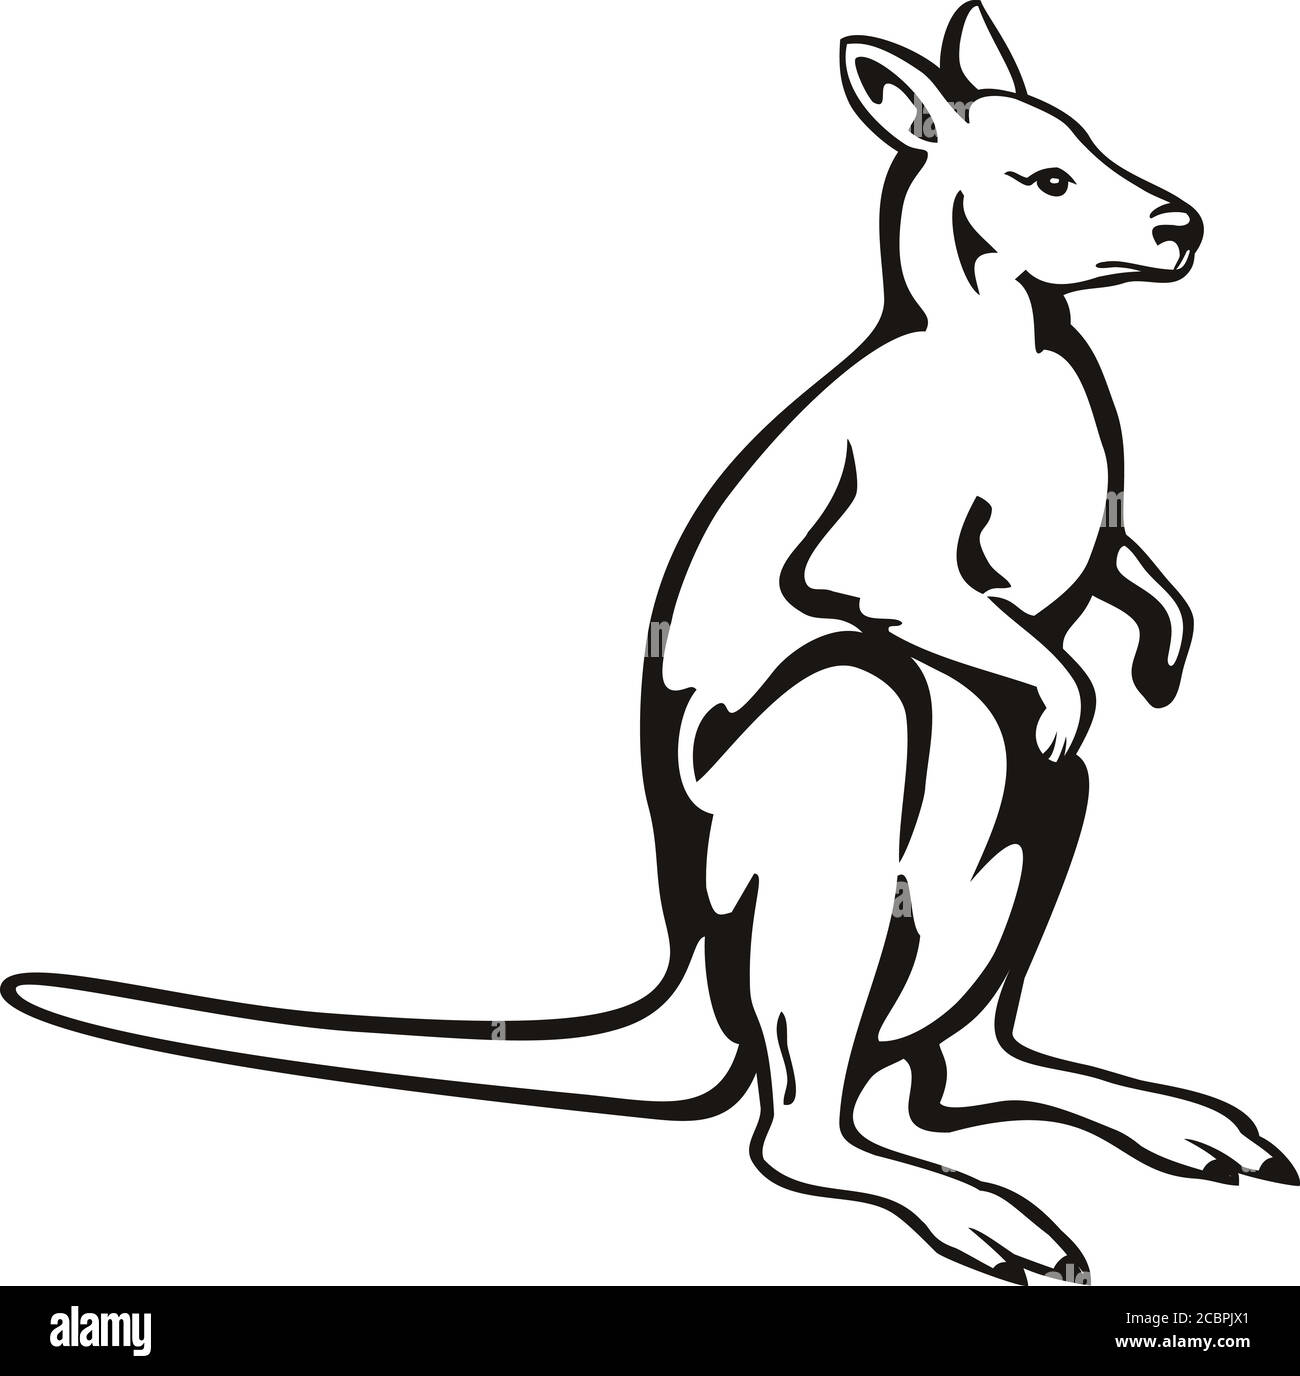 Retro-Holzschnitt-Illustration eines Känguru oder Wallaby, einer kleinen oder mittelgroßen Makropode aus Australien und Neuguinea, von der Seite an gesehen Stock Vektor